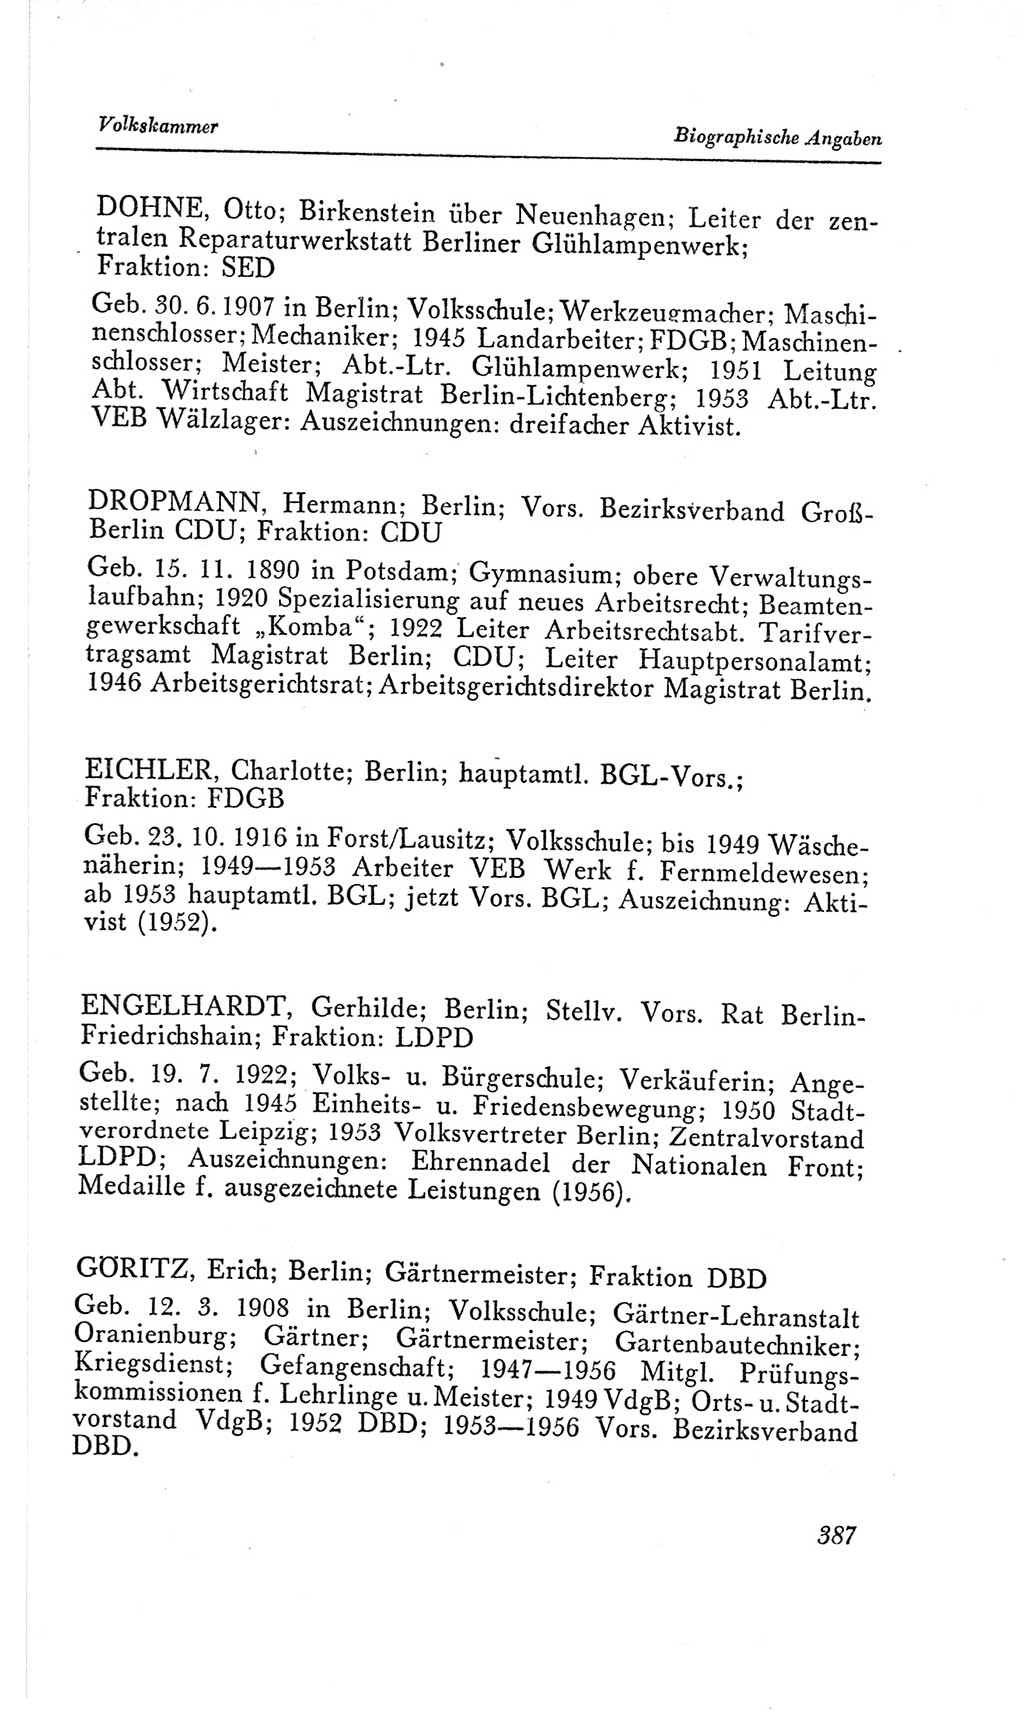 Handbuch der Volkskammer (VK) der Deutschen Demokratischen Republik (DDR), 2. Wahlperiode 1954-1958, Seite 387 (Hdb. VK. DDR, 2. WP. 1954-1958, S. 387)